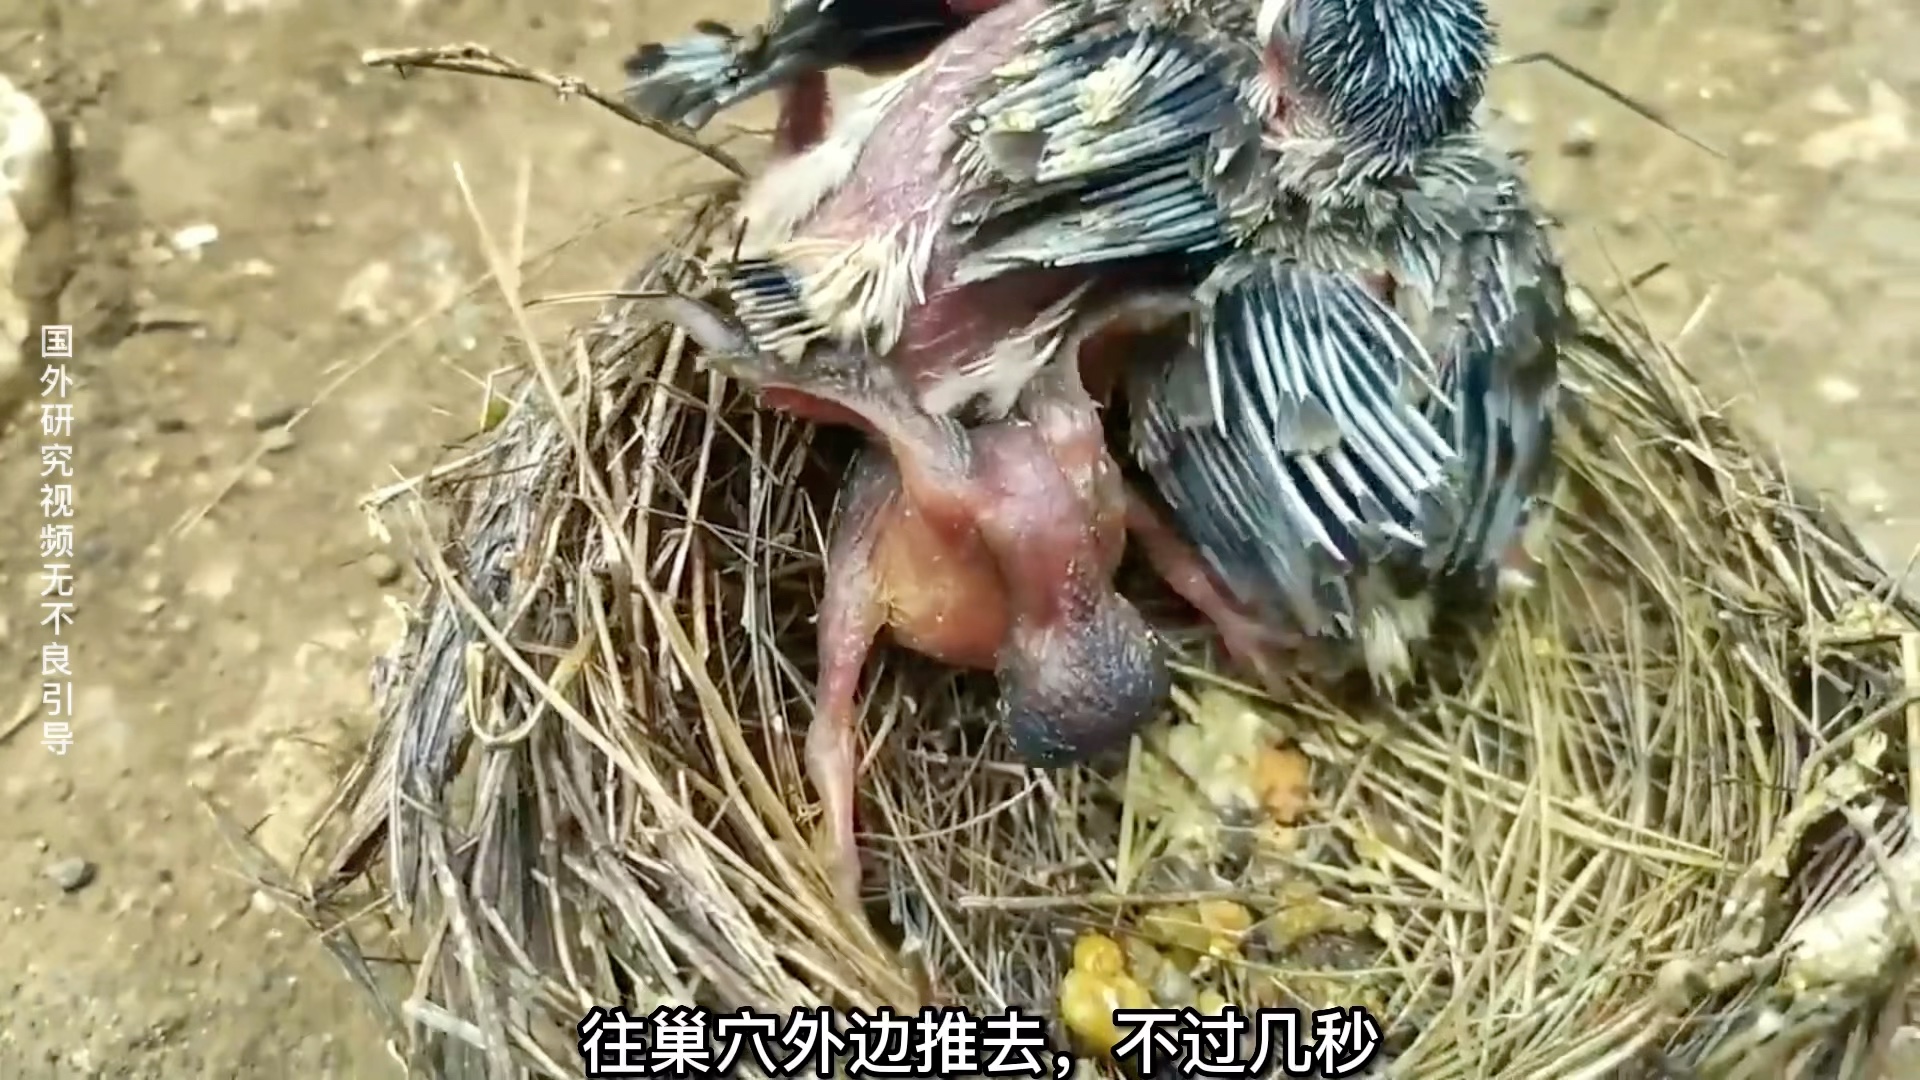 [图]这只杜鹃鸟宝宝太惨了。被国外小哥拉回来做拱鸟实验。